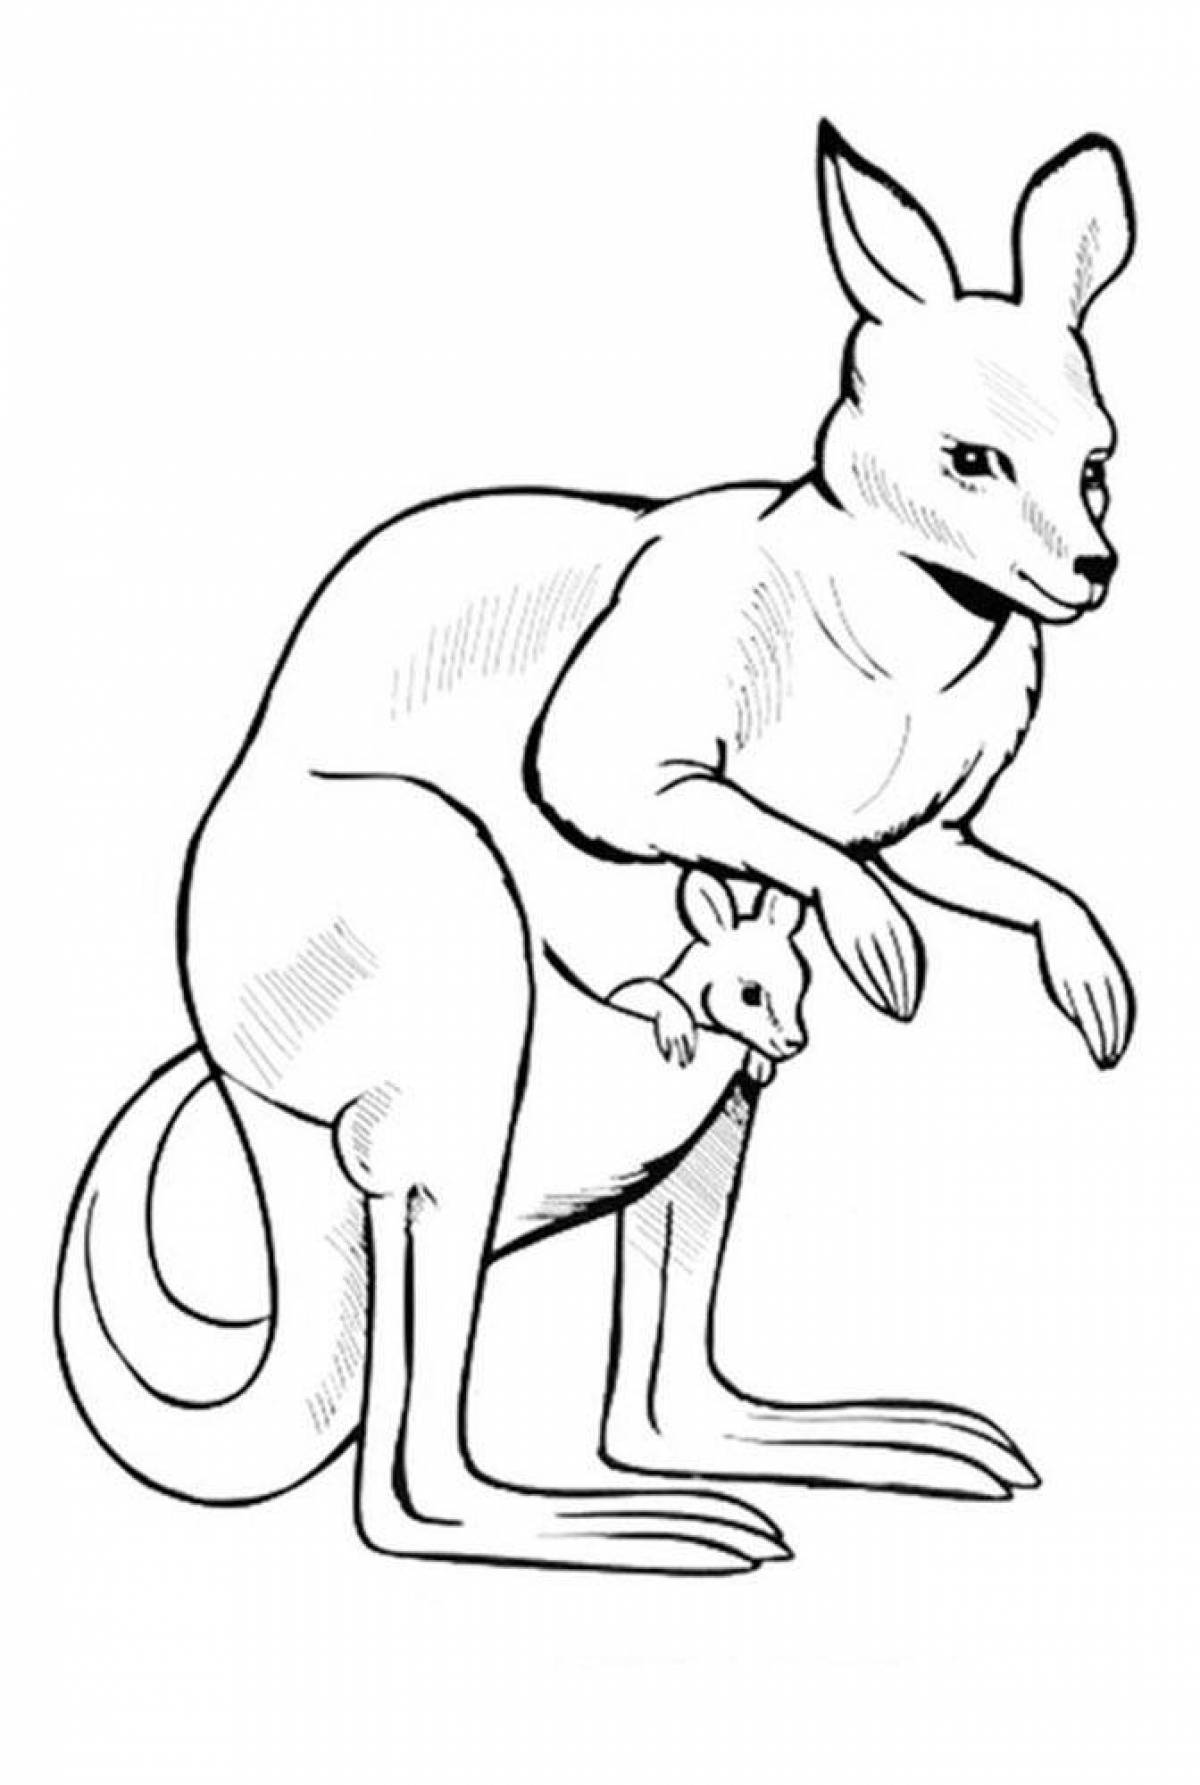 Sweet kangaroo coloring book for kids